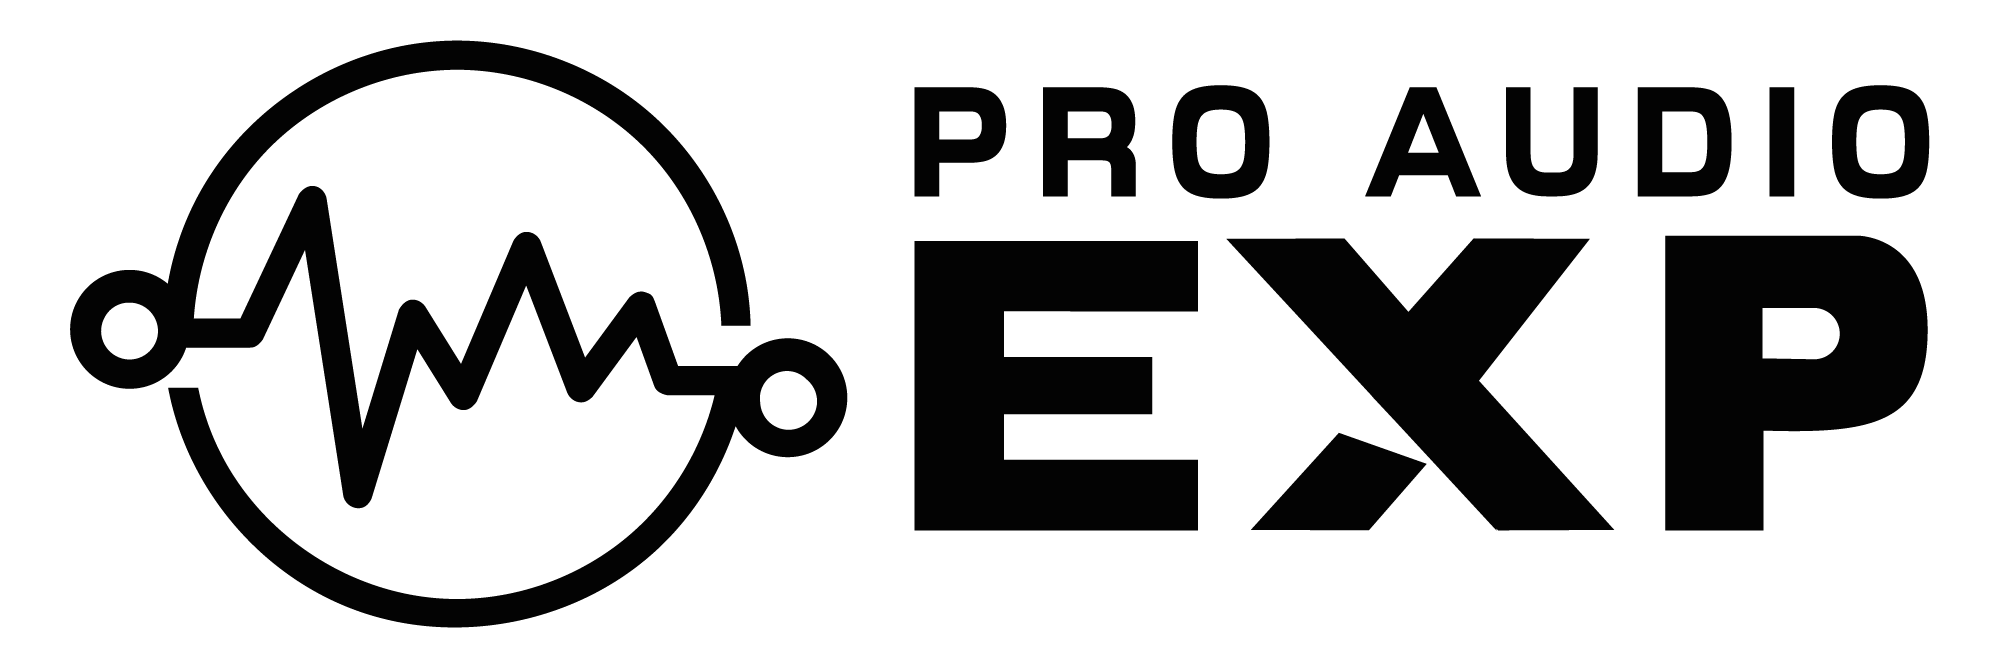 ProAudioExp